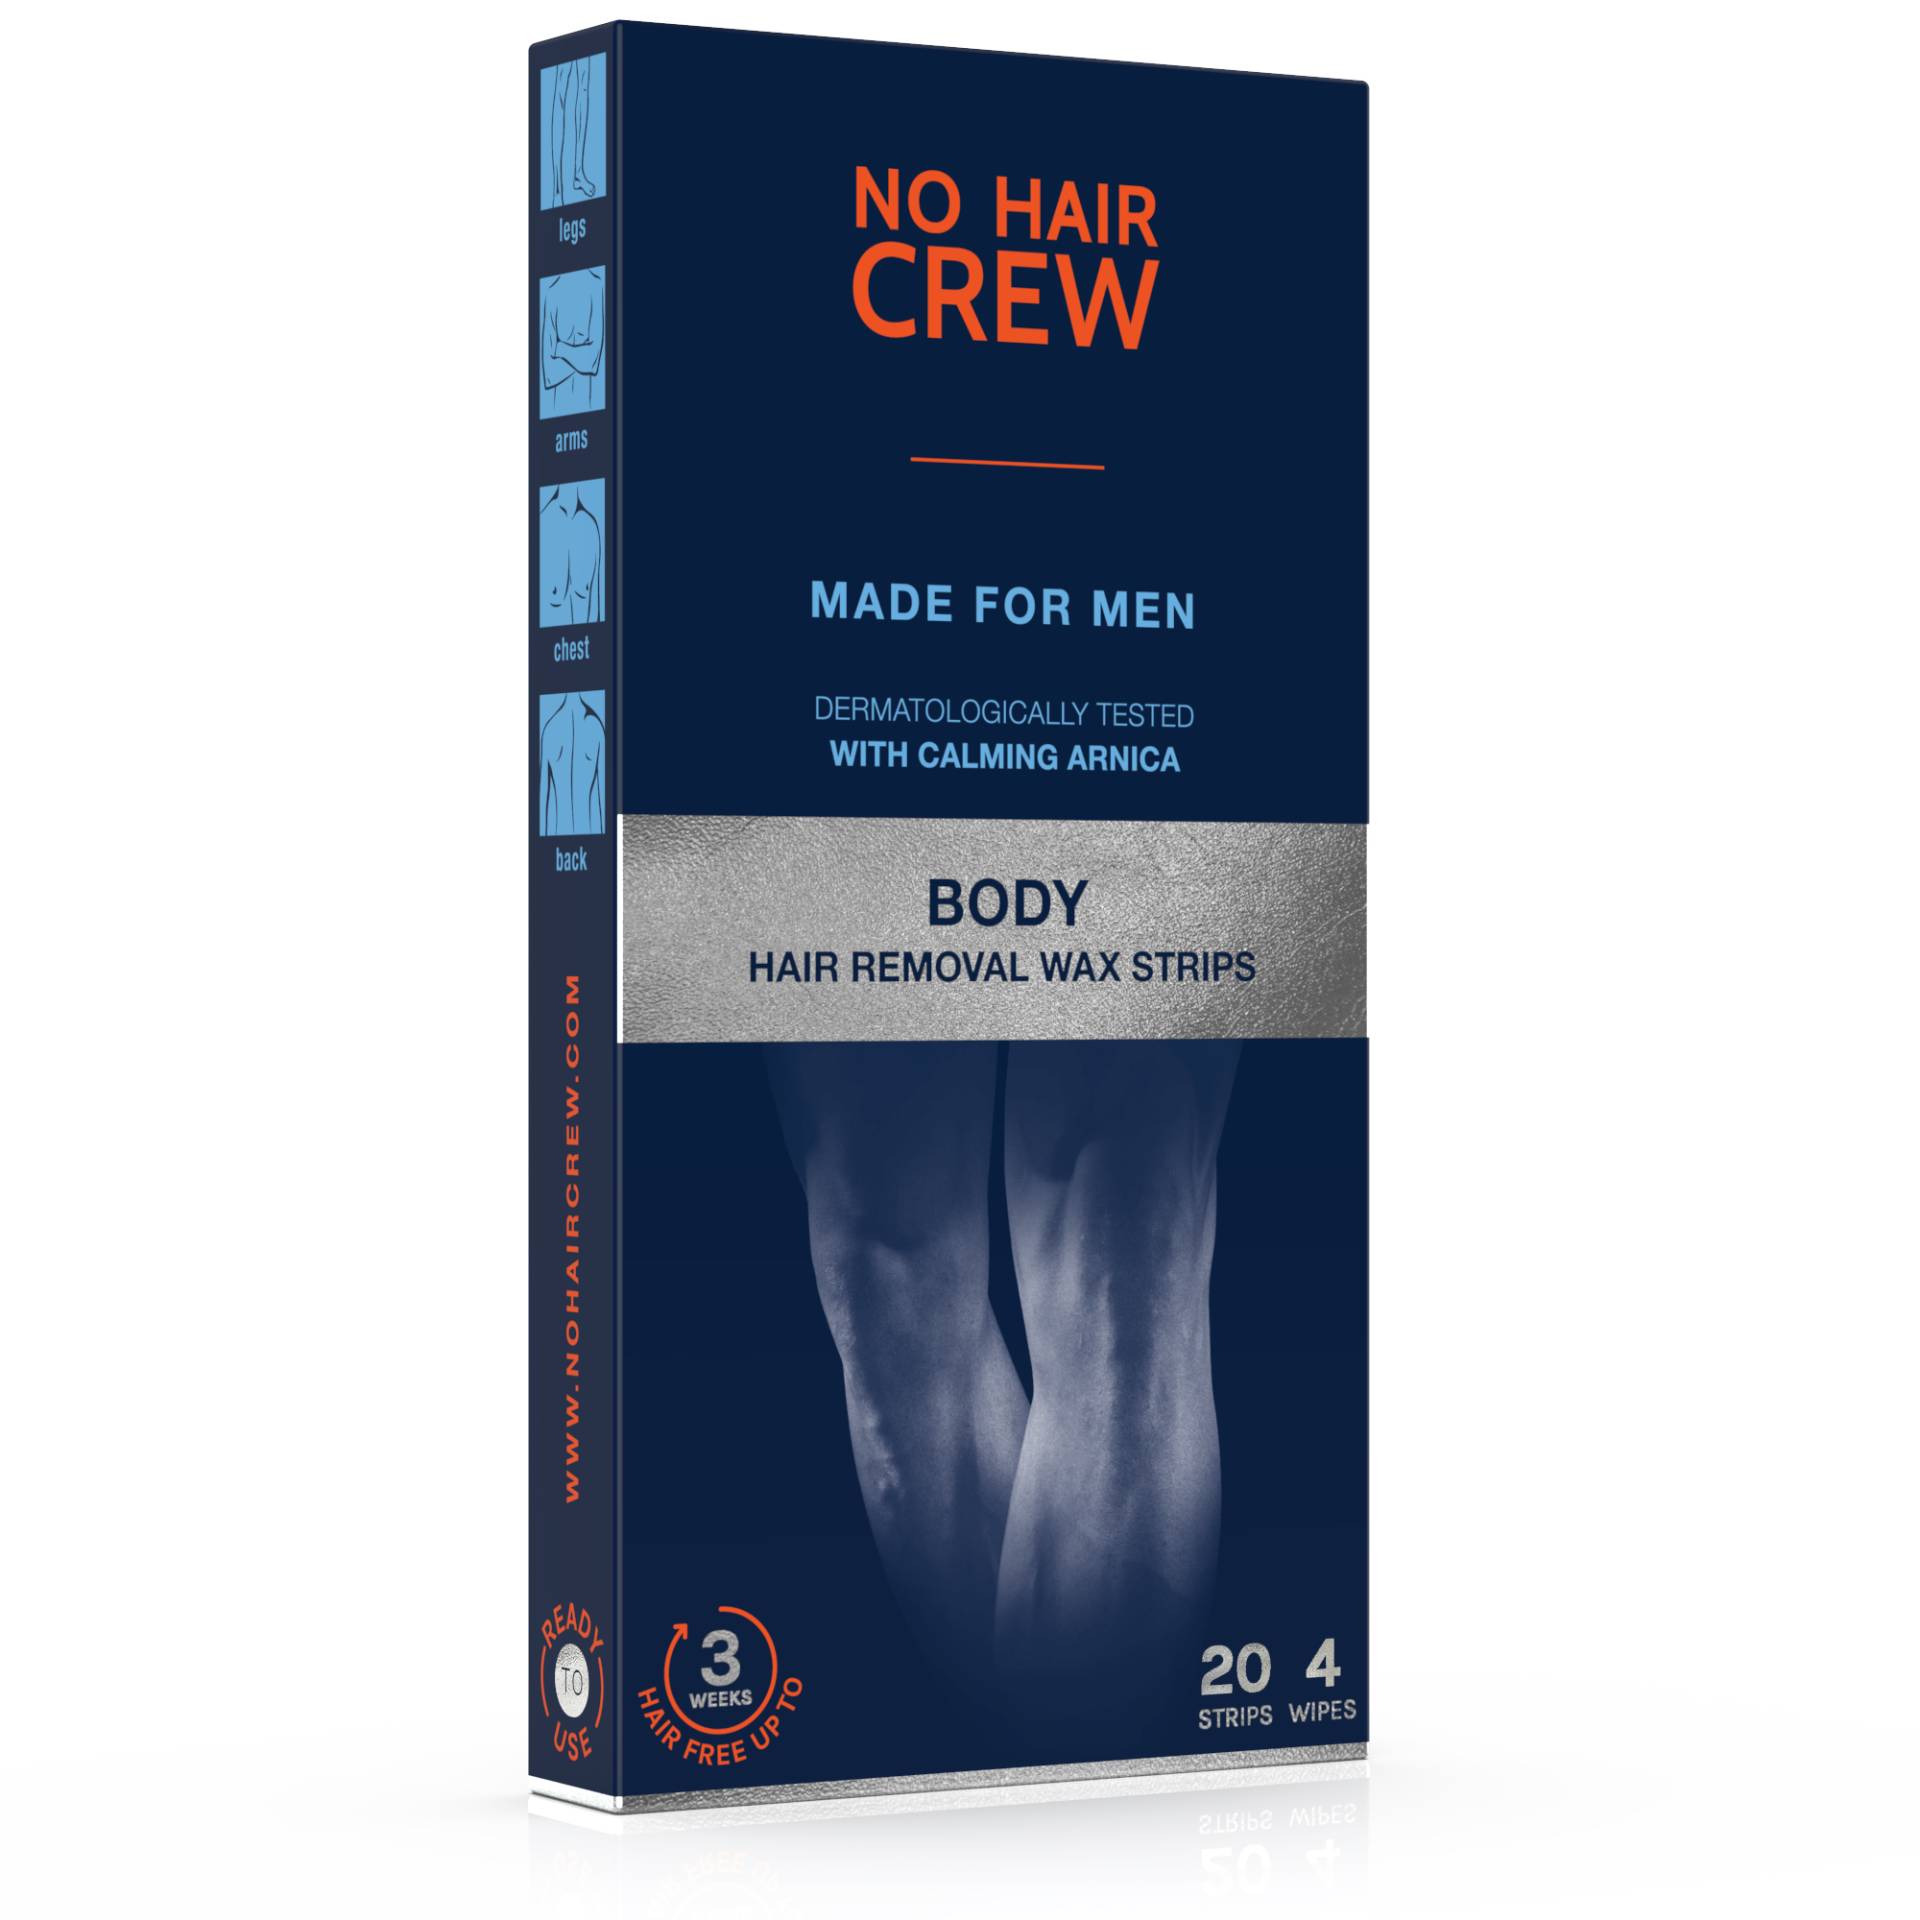 Kaltwachsstreifen Für Den Körper – Für Männer Unisex  20Stück von NO HAIR CREW